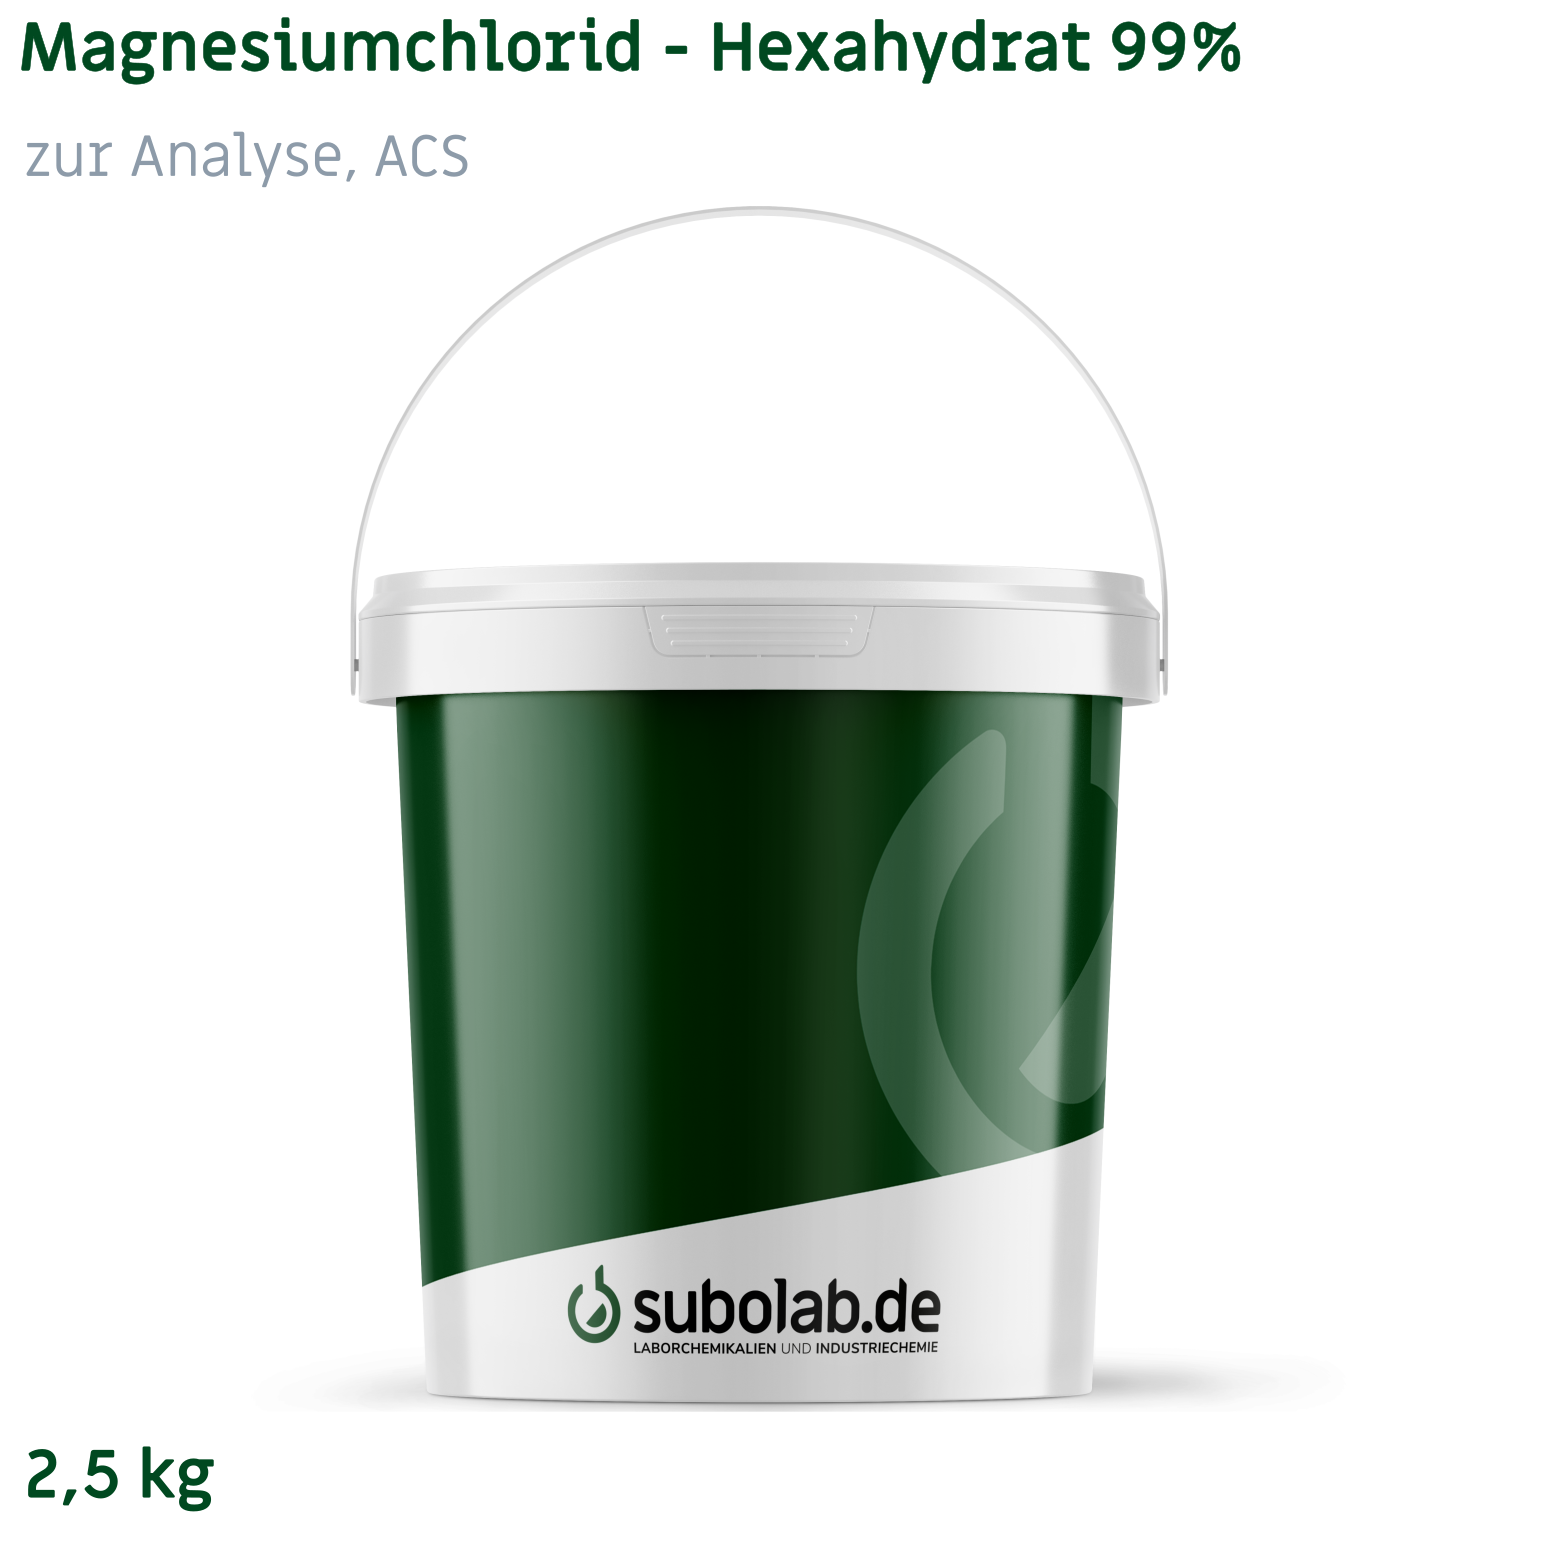 Bild von Magnesiumchlorid - Hexahydrat 99% zur Analyse, ACS (2,5 kg)